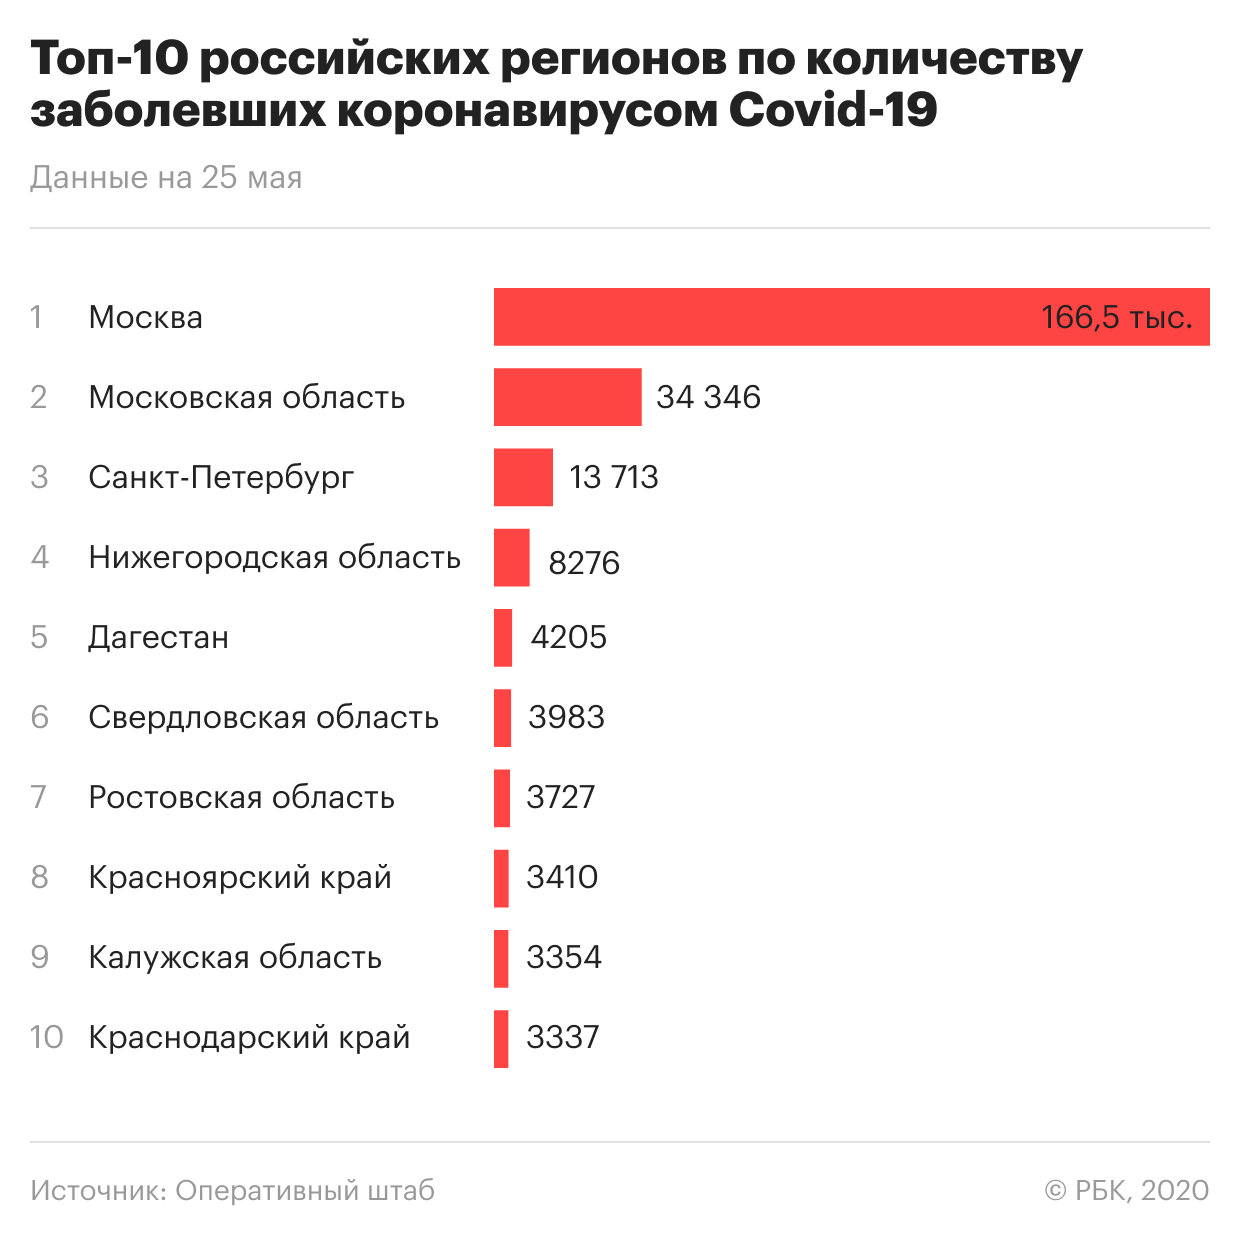 Сколько человек заболели сегодня. Сколько заболевших в России. Сколько человек заболело коронавиру. Количество заболевших. Статистика пандемии в России.